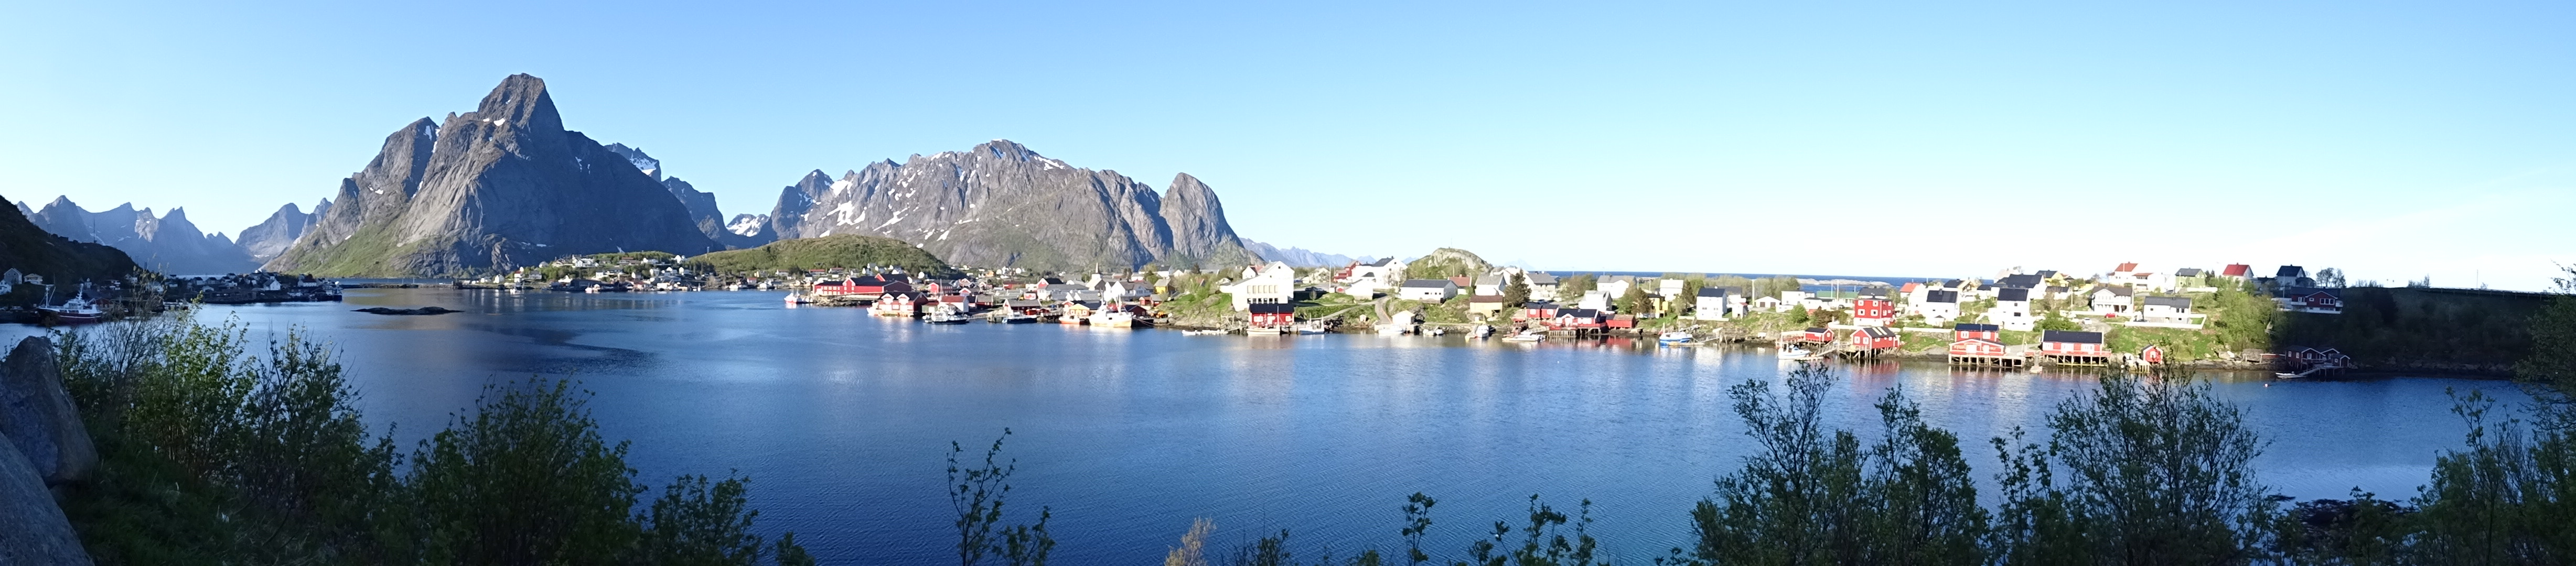 Ein Blick auf Reine, das administrative Zentrum der Gemeinde Moskenes auf den Lofoten in Norwegen.